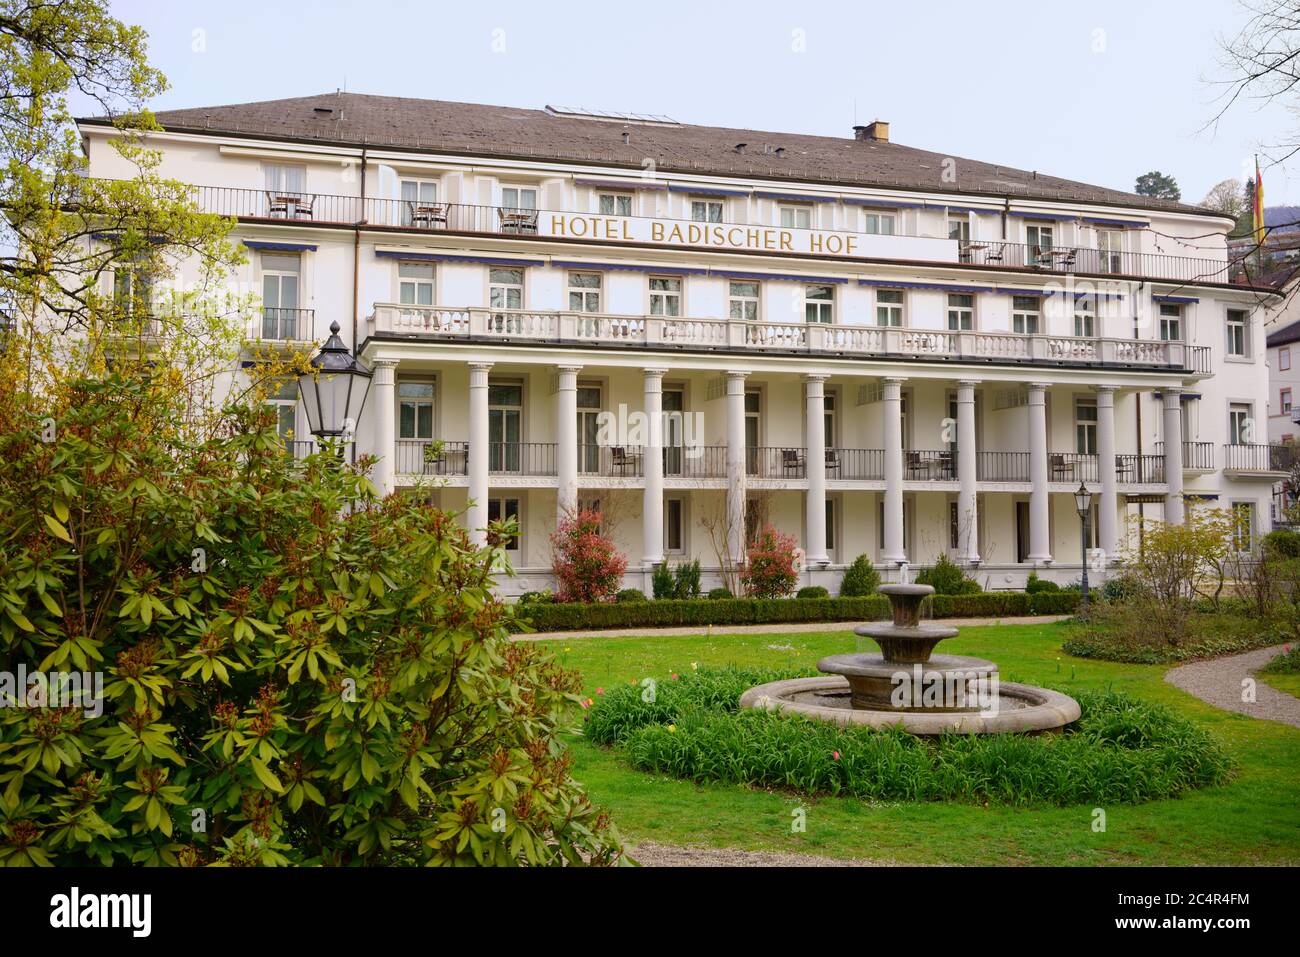 Hotel Badischer Hof en Baden-Baden, Alemania. Arquitectura histórica con el símbolo de la ciudad del centro de salud: La fuente de agua termal de tres cuenco. Foto de stock